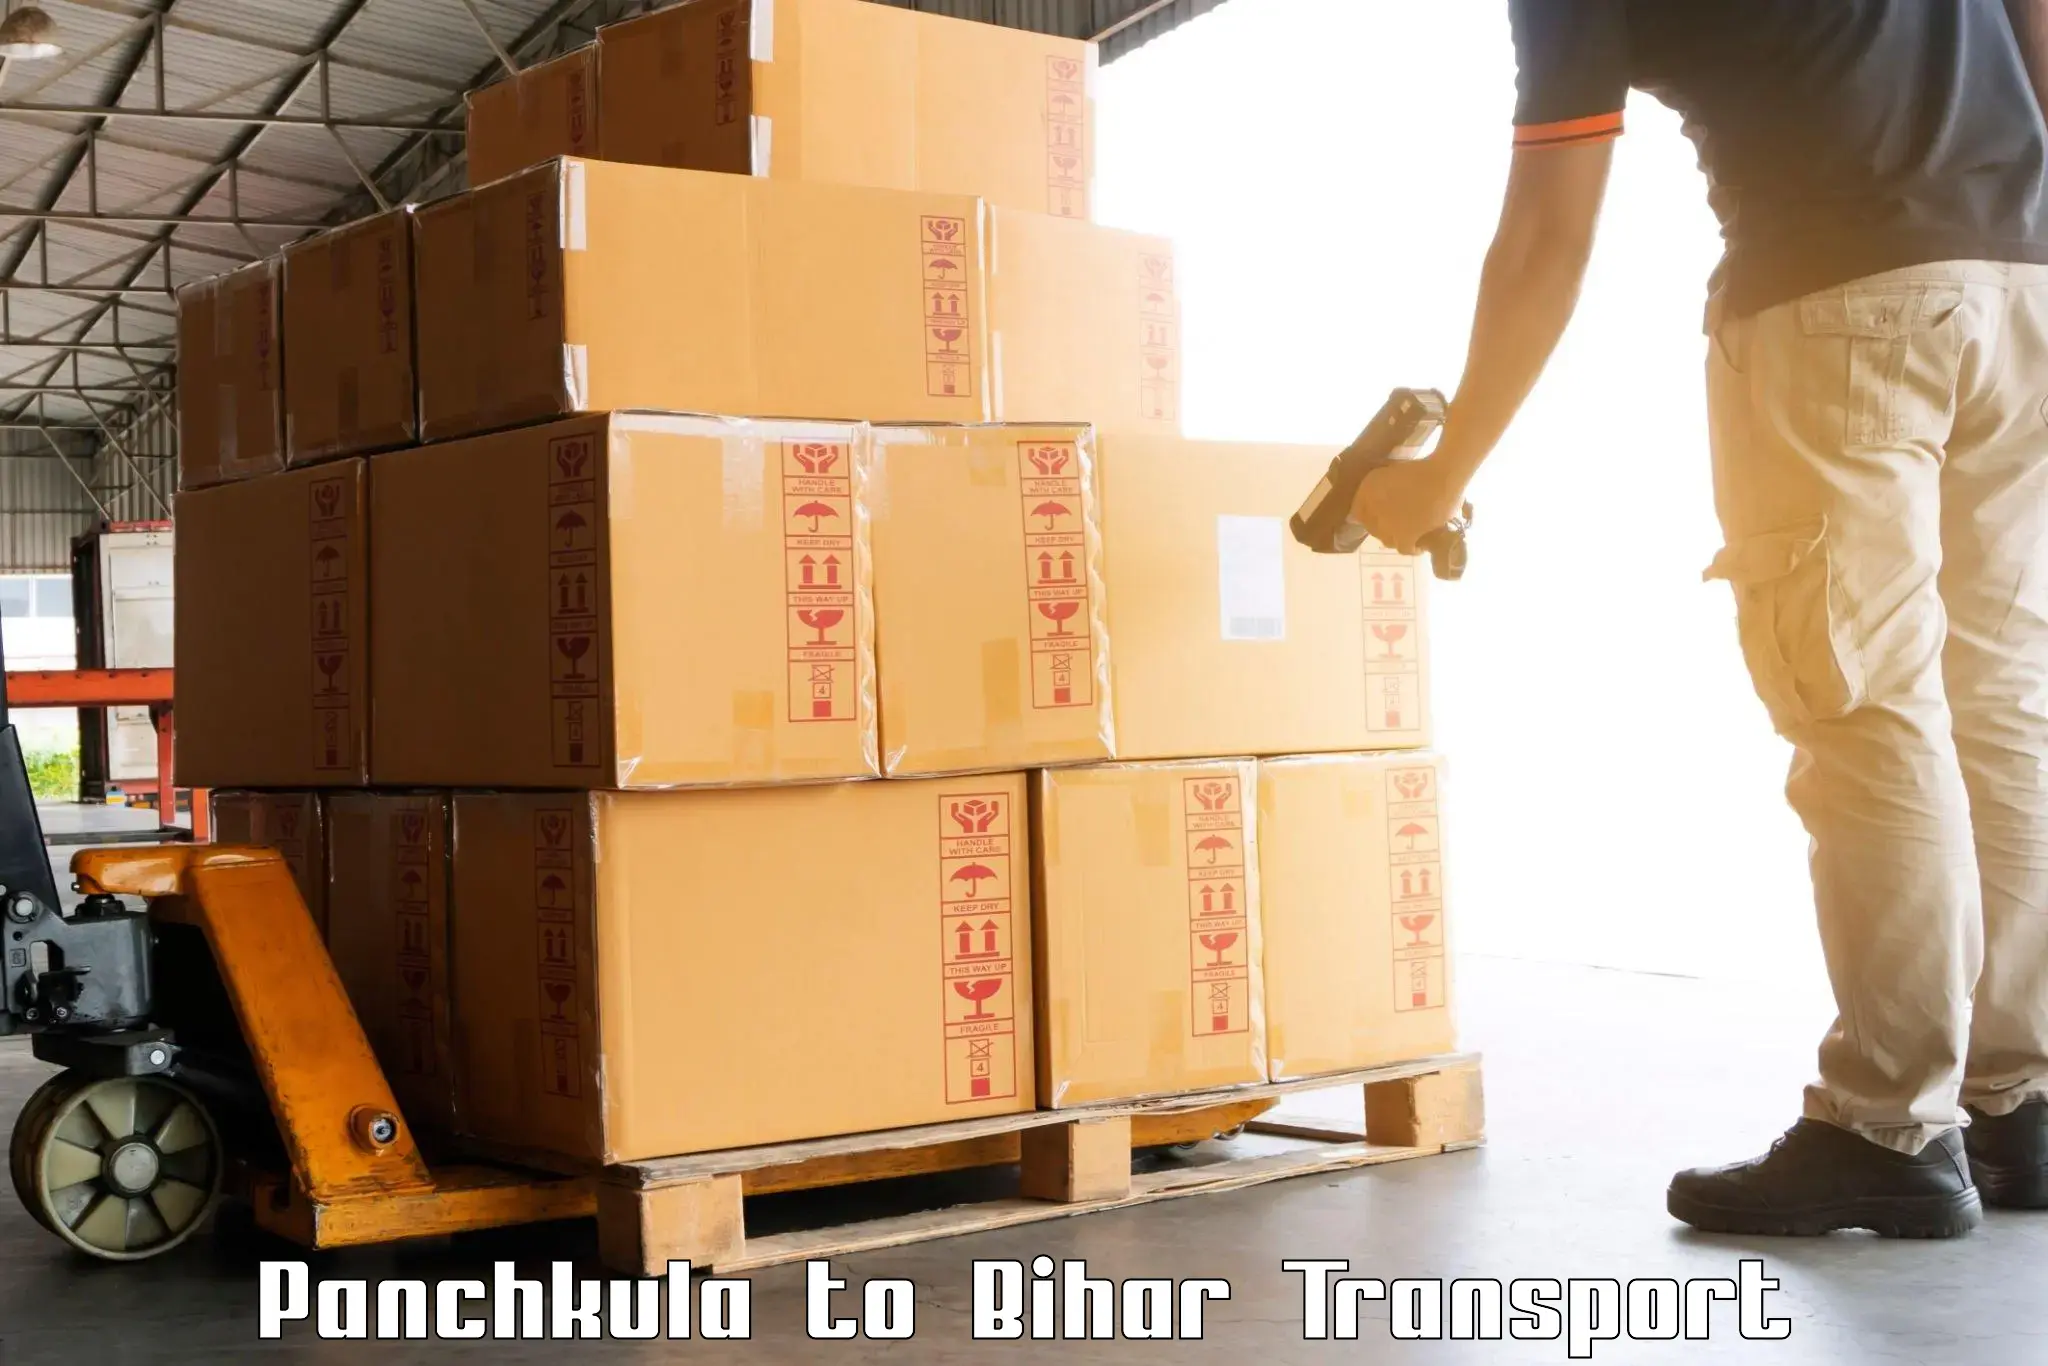 Transport in sharing Panchkula to Narkatiaganj